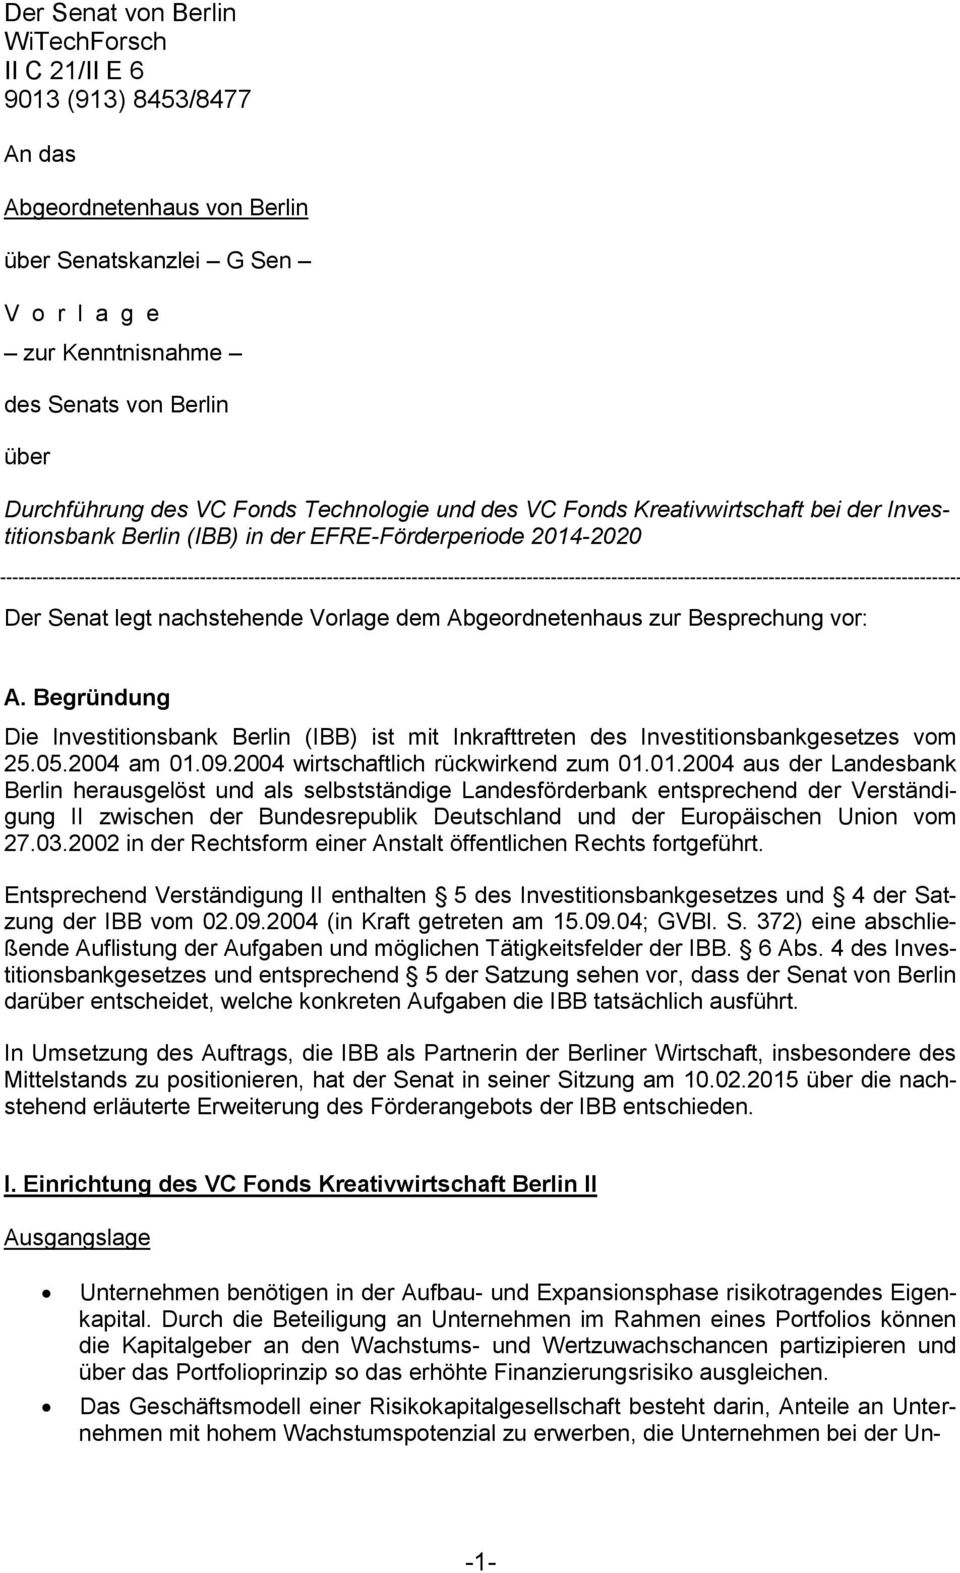 A. Begründung Die Investitinsbank Berlin (IBB) ist mit Inkrafttreten des Investitinsbankgesetzes vm 25.05.2004 am 01.